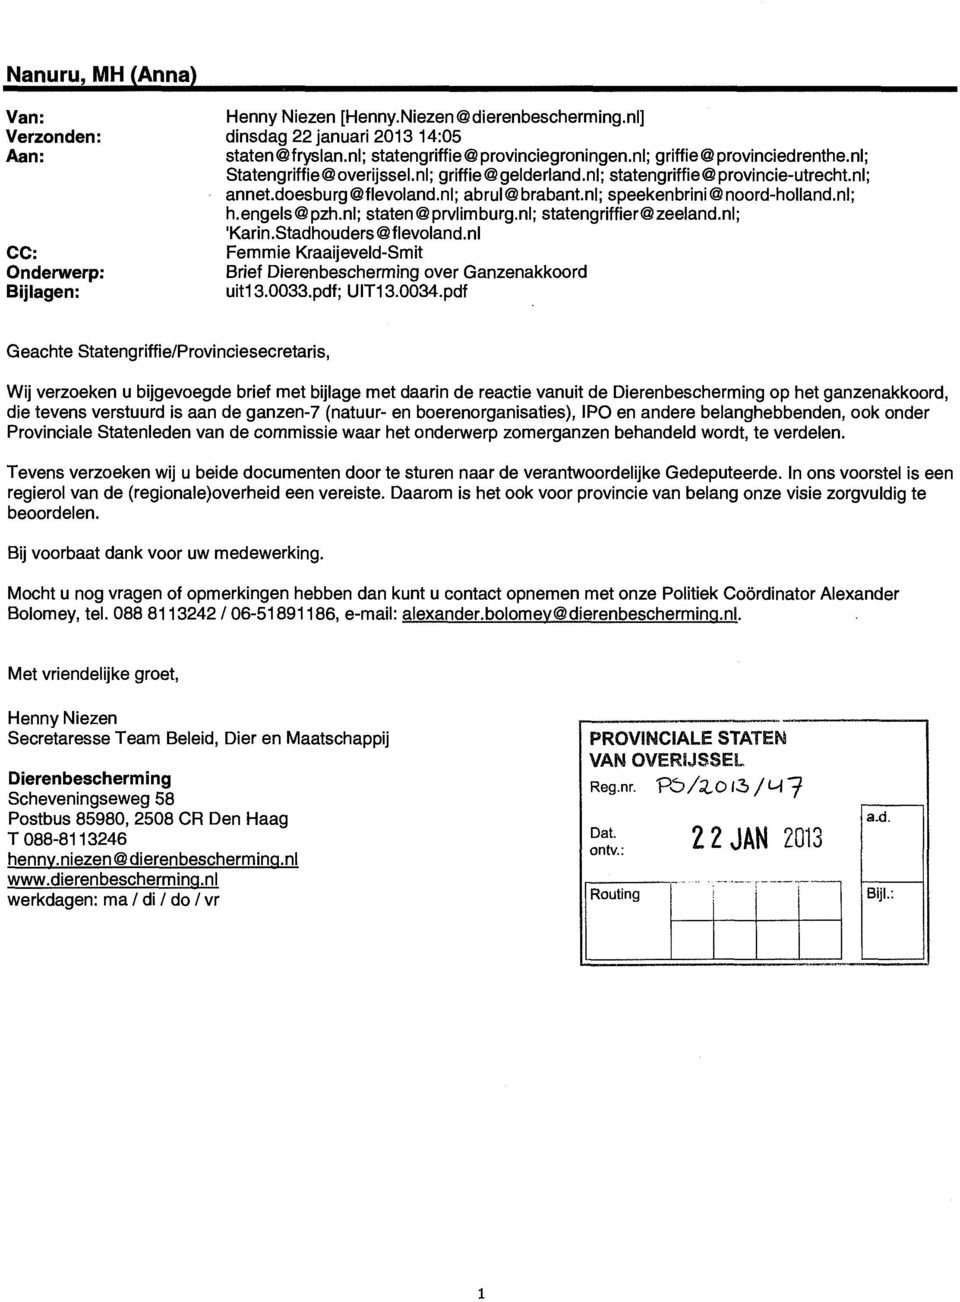 nl; h.engels@pzh.nl; staten@prvlimburg.nl; statengriffier@zeeland.nl; 'Karin.Stadhouders@flevoland.nl Femmie Kraaijeveld-Smit Brief Dierenbescherming over Ganzenakkoord uit13.0033.pdf; UIT13.0034.